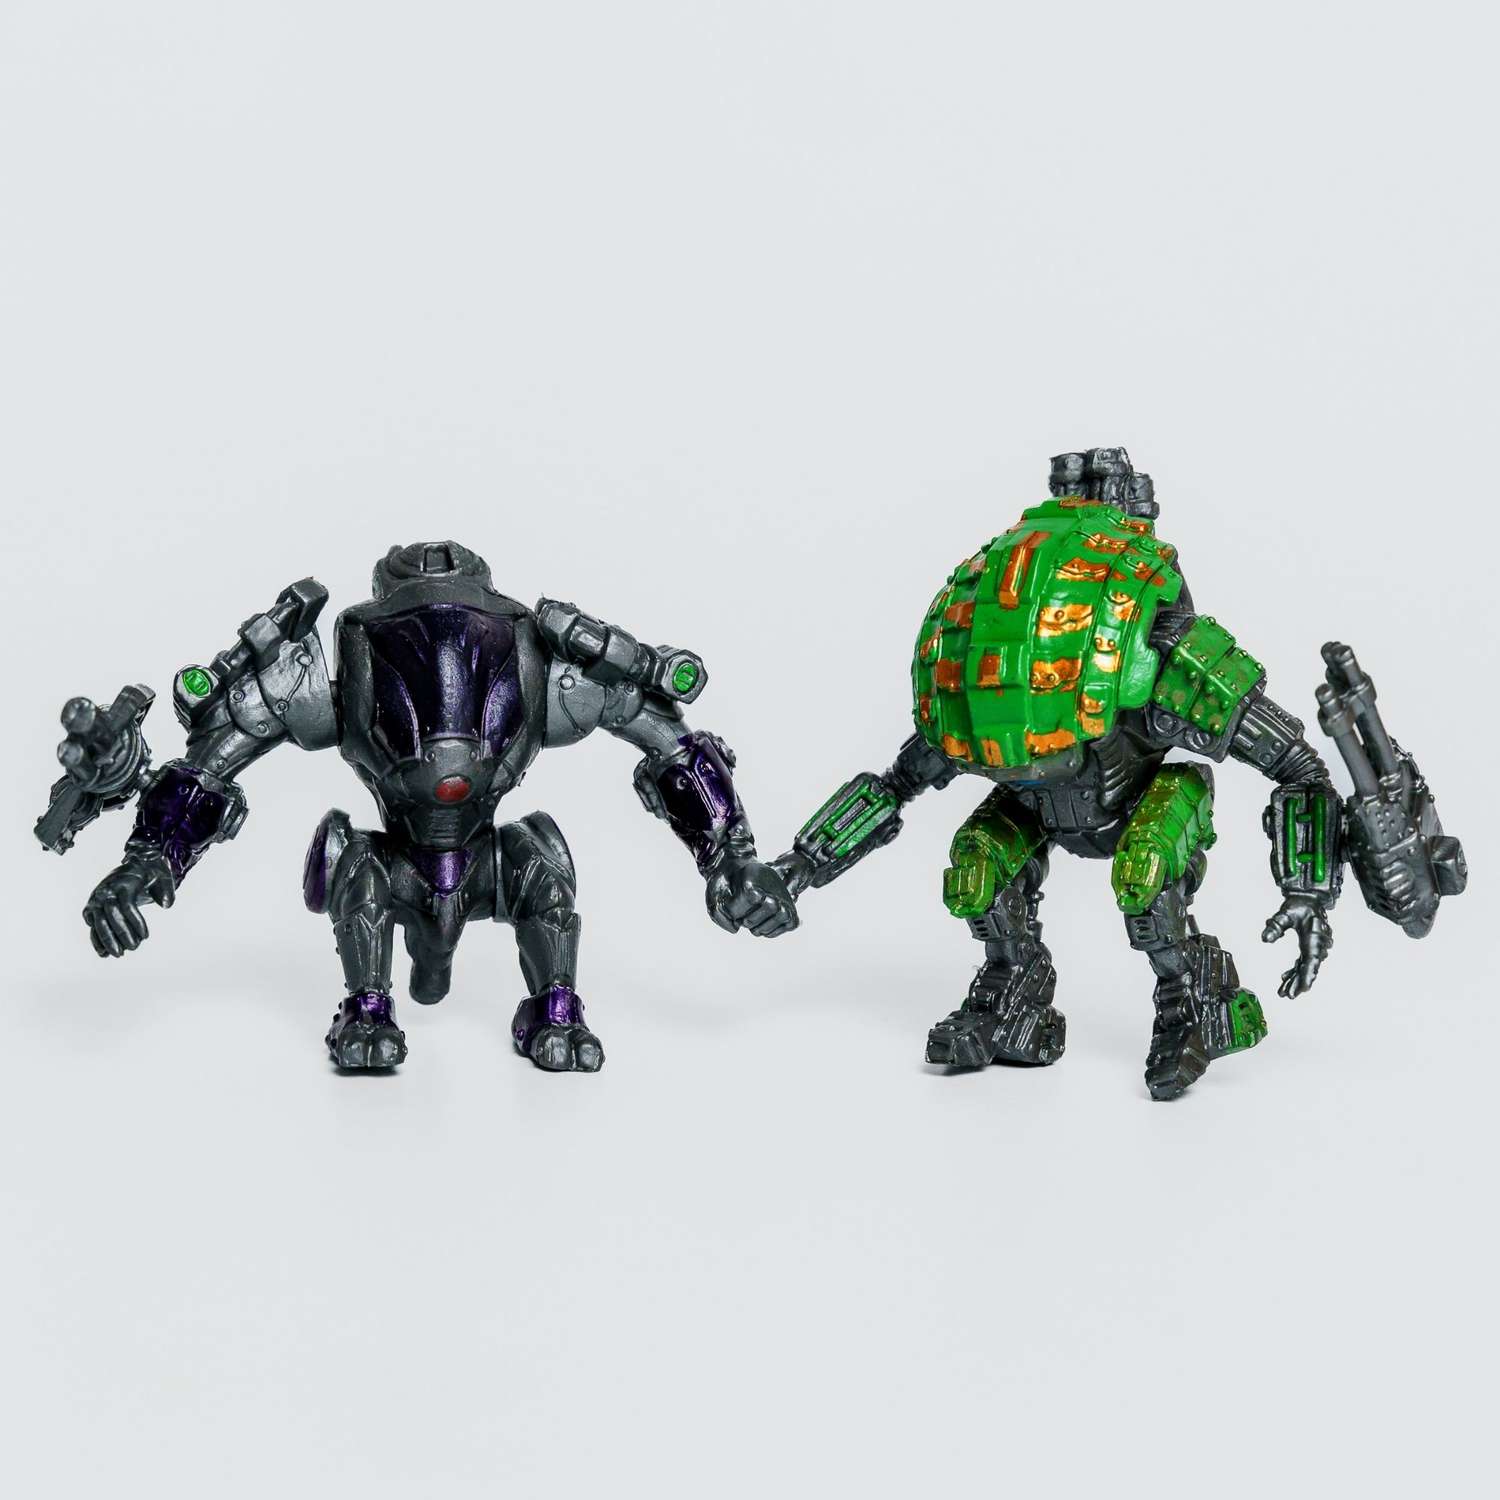 Роботы CyberCode 2 фигурки игрушки для детей развивающие пластиковые коллекционные интересные. 8см - фото 1